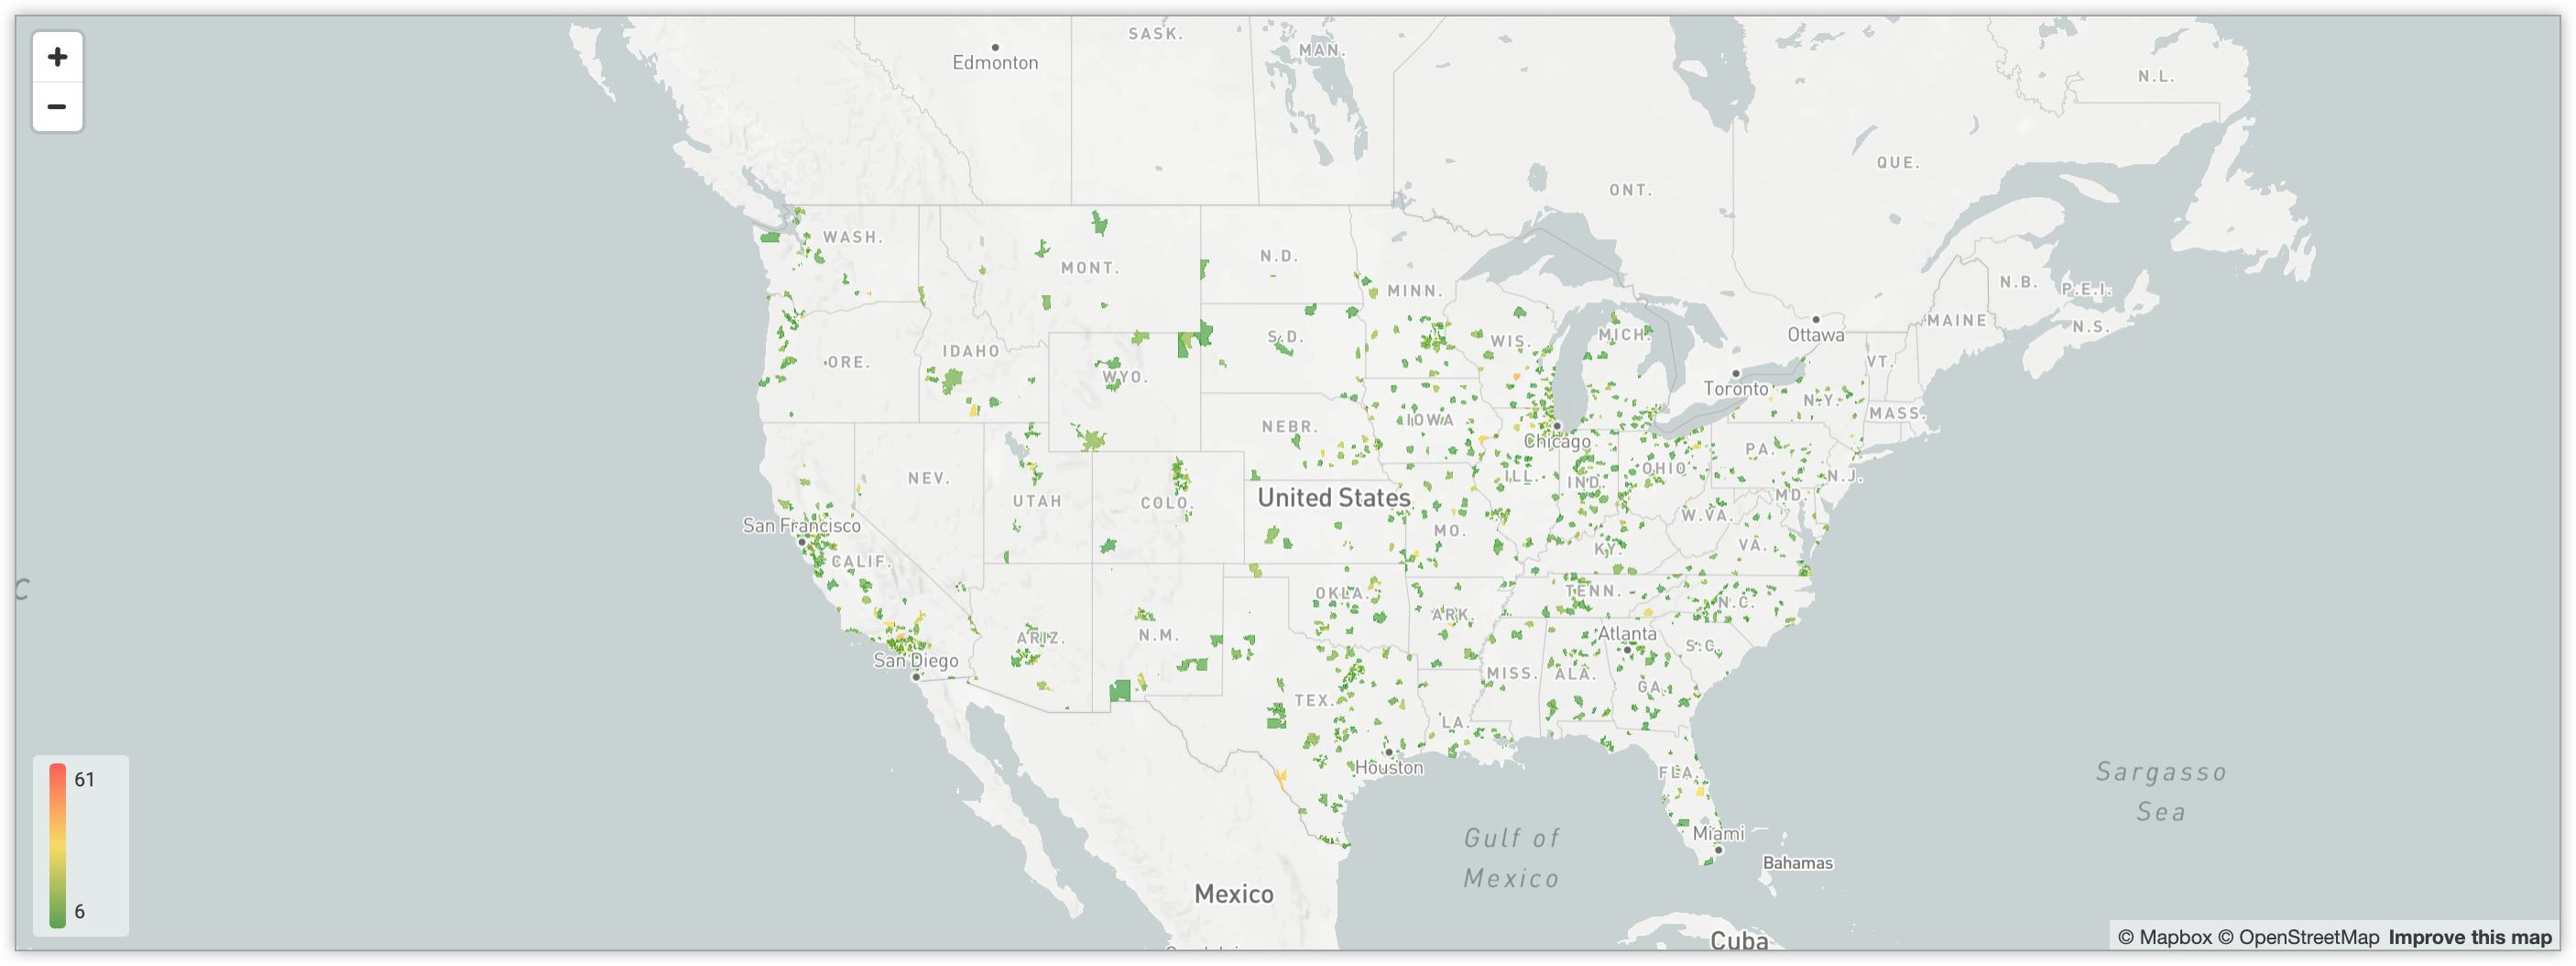 Carte interactive montrant le nombre d'utilisateurs pour tous les codes postaux des États-Unis via un système de code de couleurs en dégradé